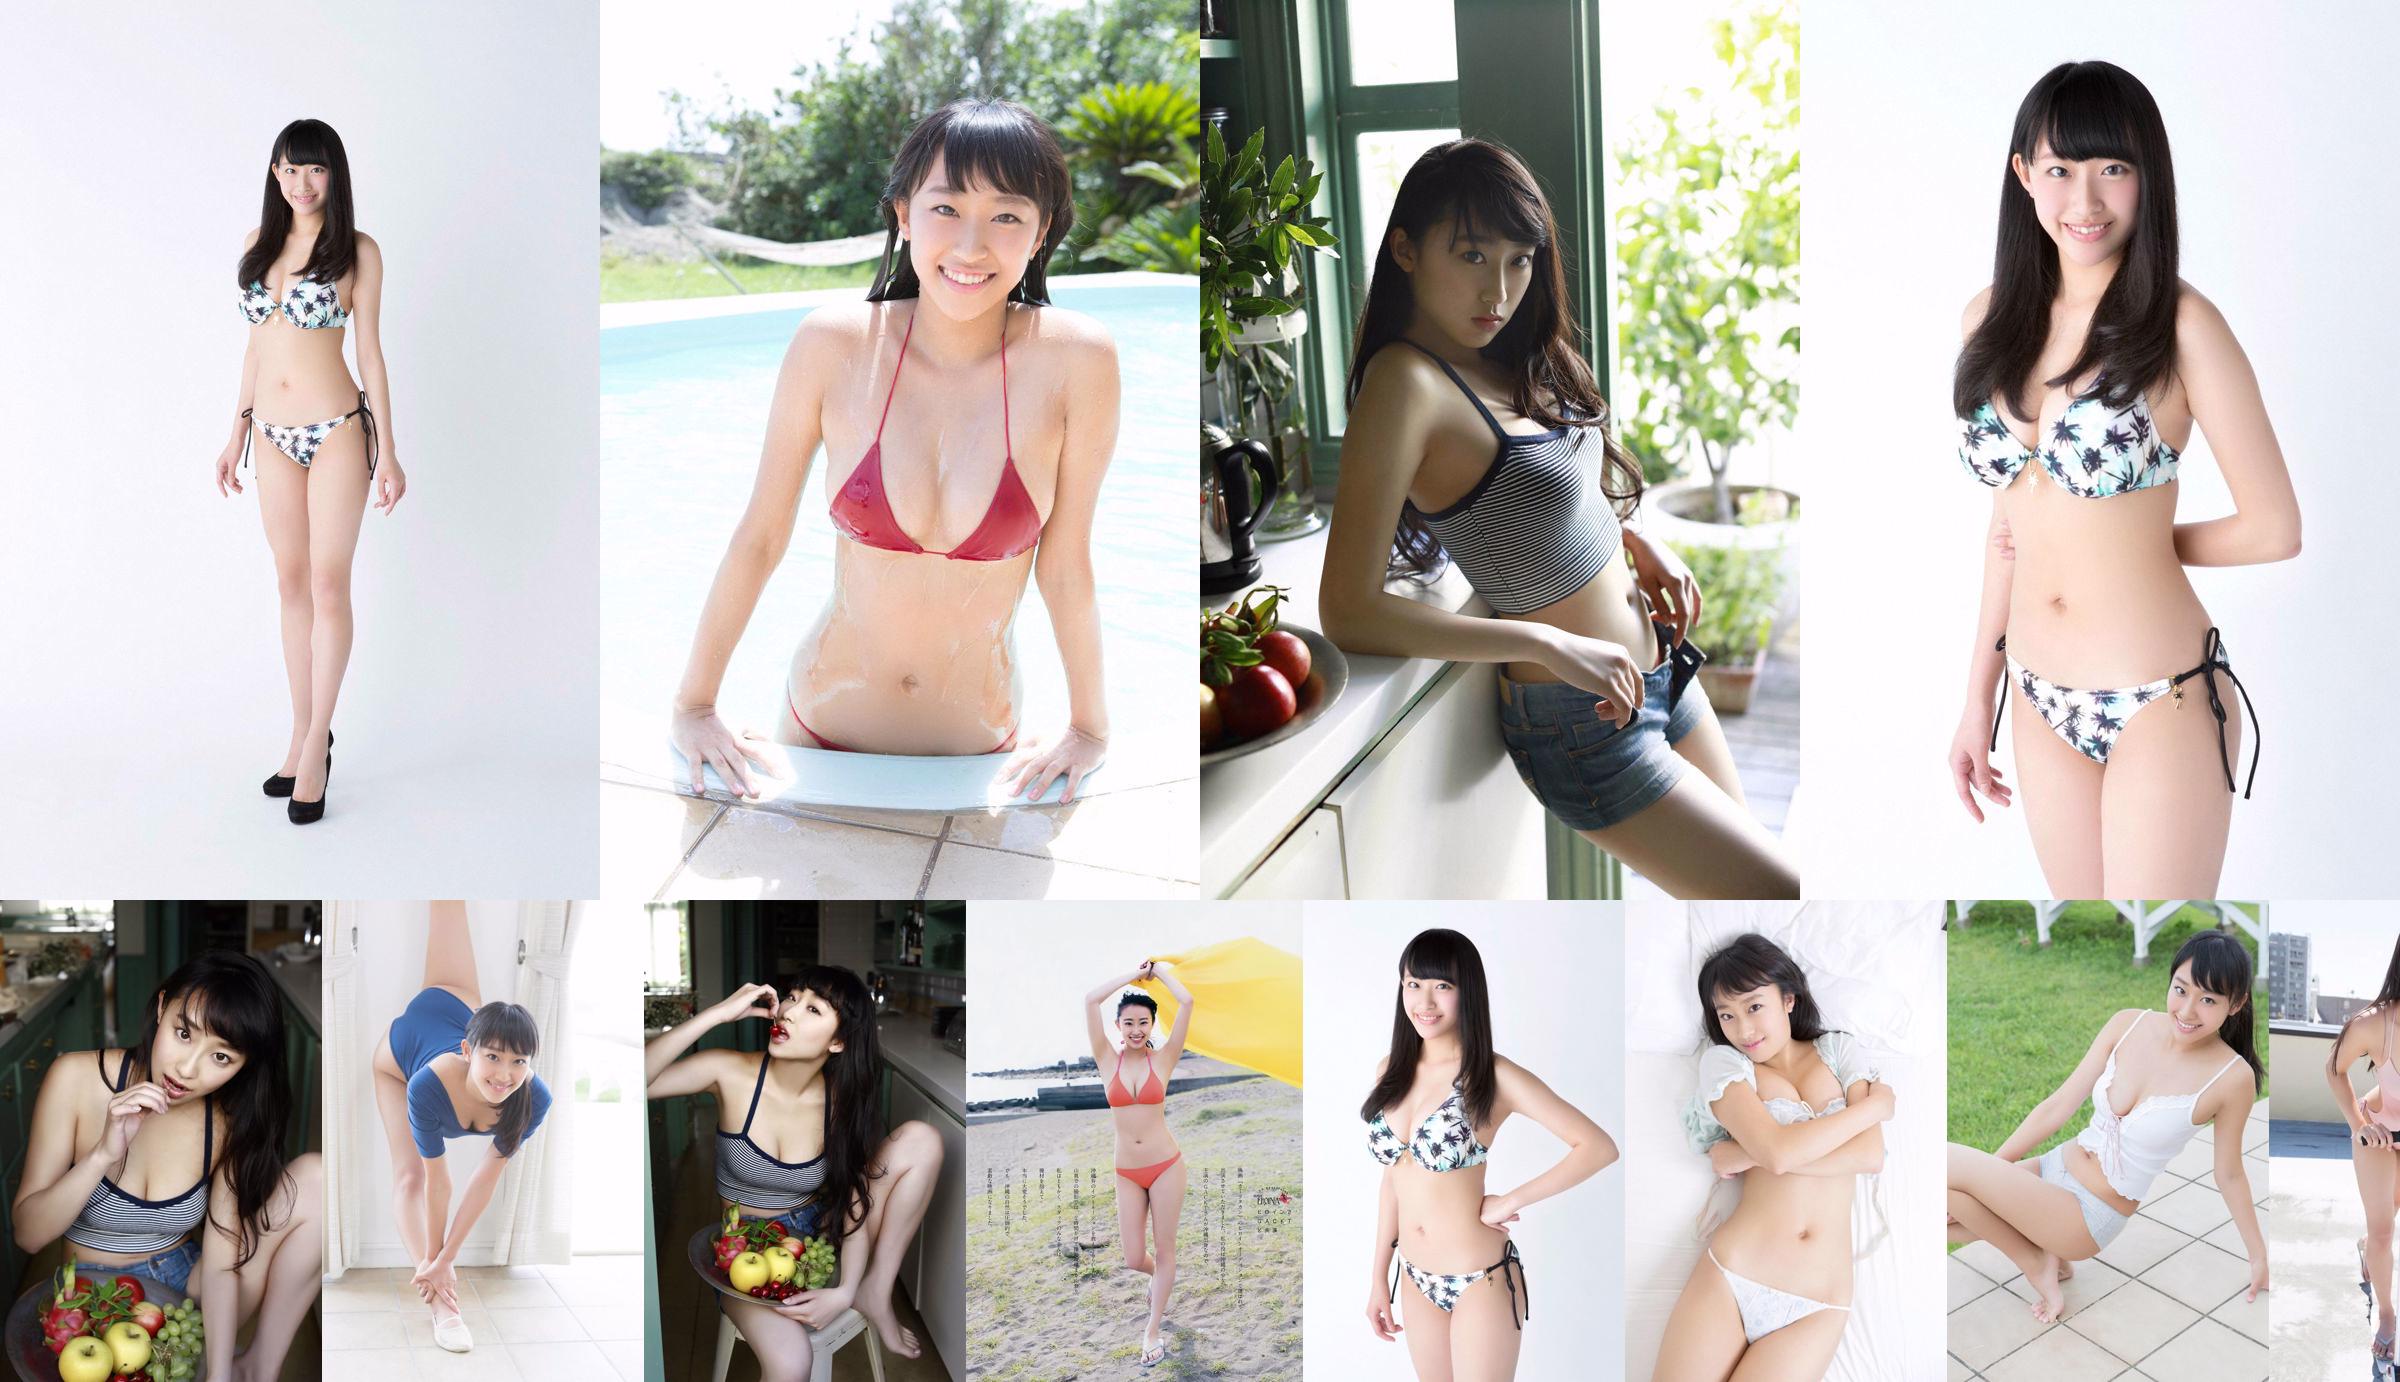 Matsura Sa Yuri Matsura Kaori ミリオンガールズZ [Young Animal] 2014 No.14 Photo Magazine No.9d1748 Seite 20